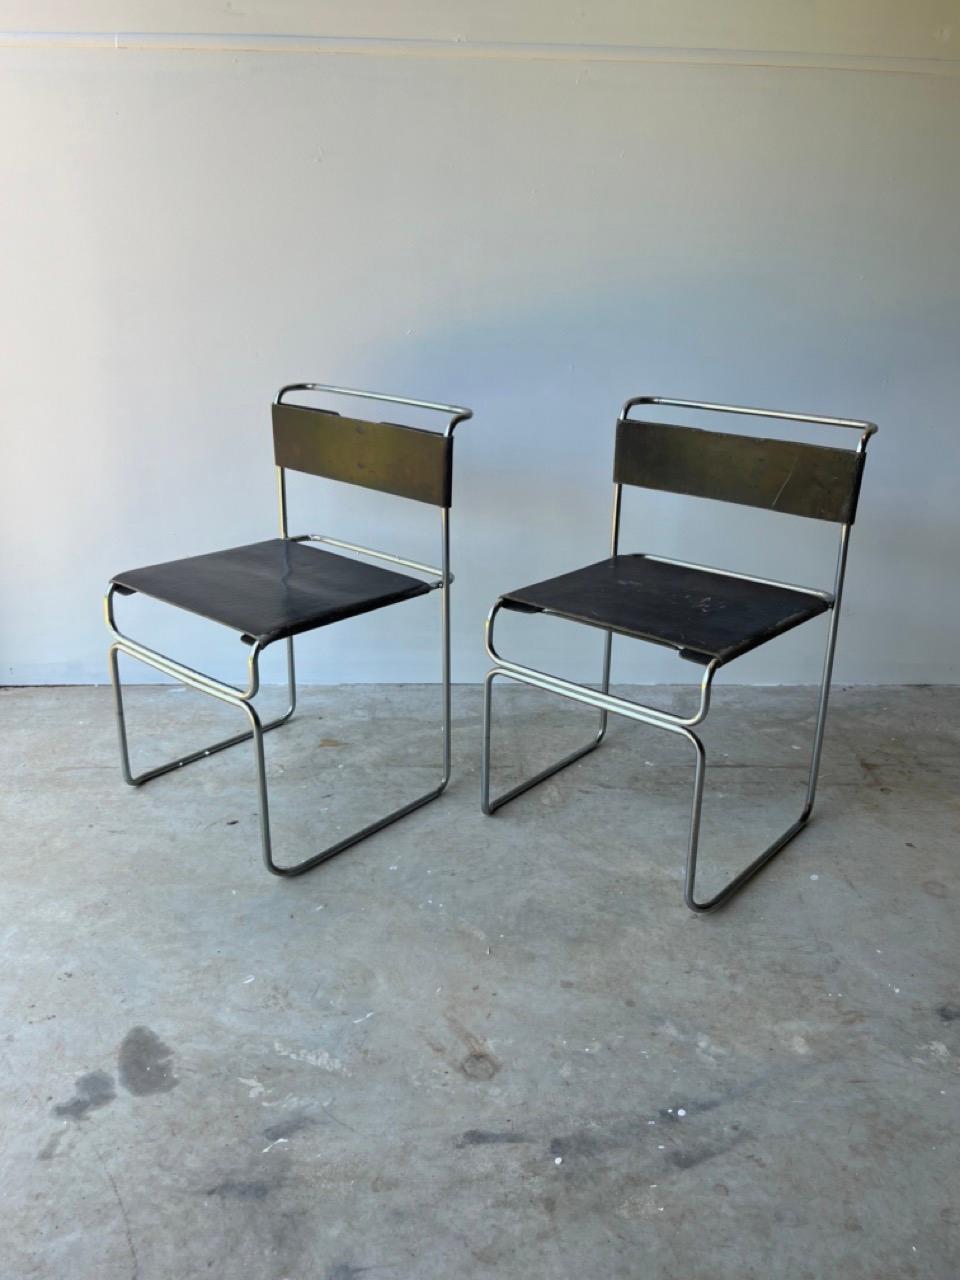 Diese Stühle sind stapelbar mit Struktur in Chrom und schwarzem Stoff, die Rückenlehne ist gestreckt und wird von Federn gehalten. Einzigartiges schlankes, minimalistisches Design. 

Giovanni Carini war ein italienischer Architekt und Designer, der